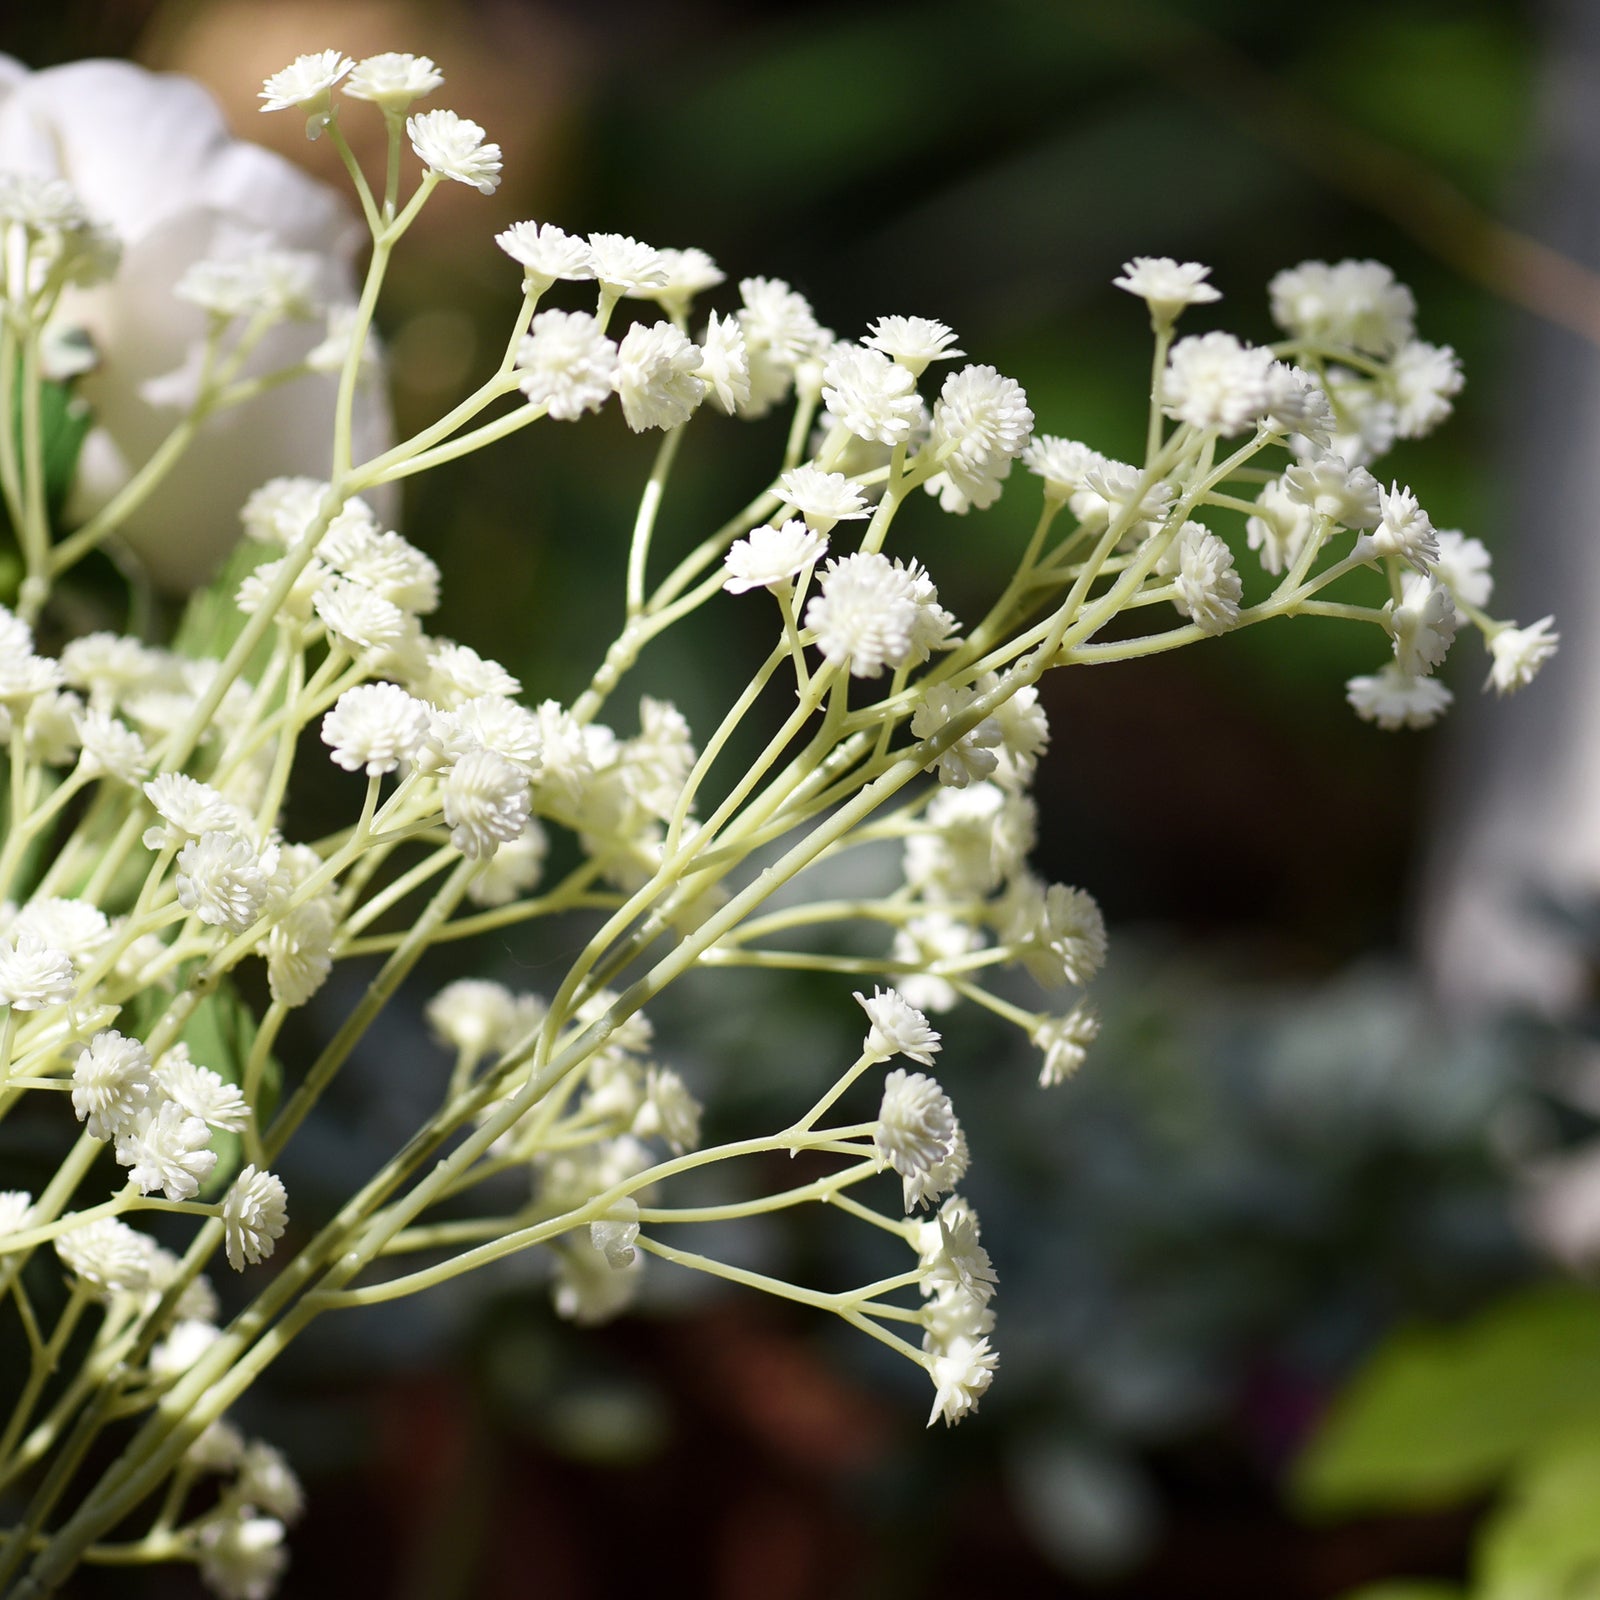 10 Piece Gypsophila Artificial FlowersBaby's Breath Bushes